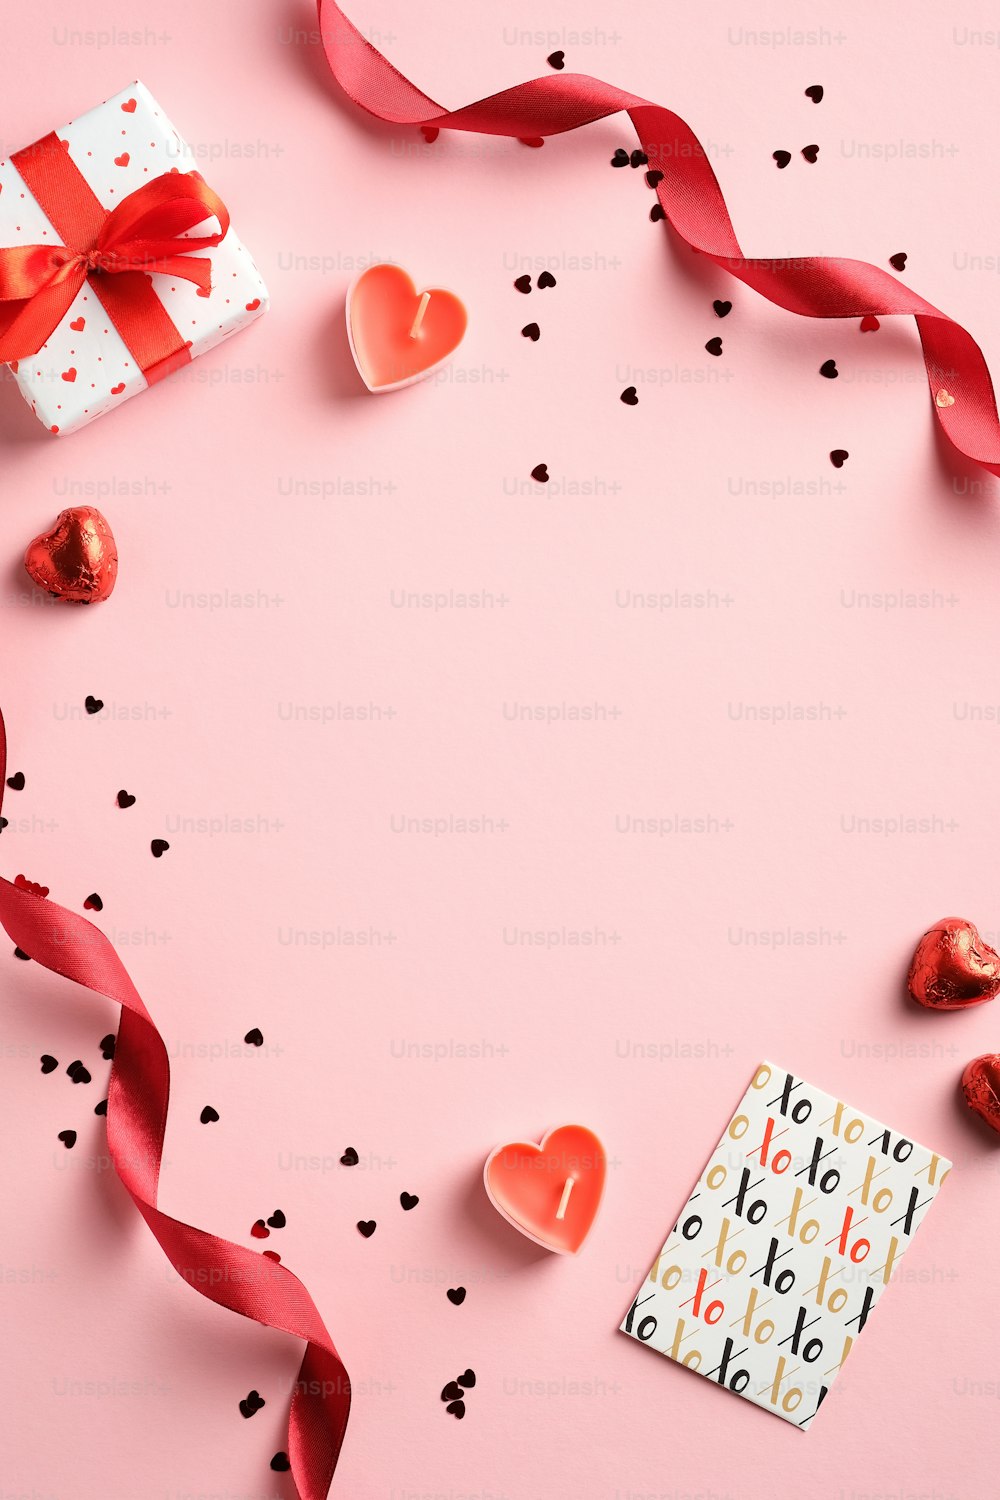 해피 발렌타인 데이 개념입니다. 빨간 리본, 선물 상자, 인사말 카드, 분홍색 배경에 색종이가 있는 창의적인 레이아웃. 평면도, 플랫 레이.